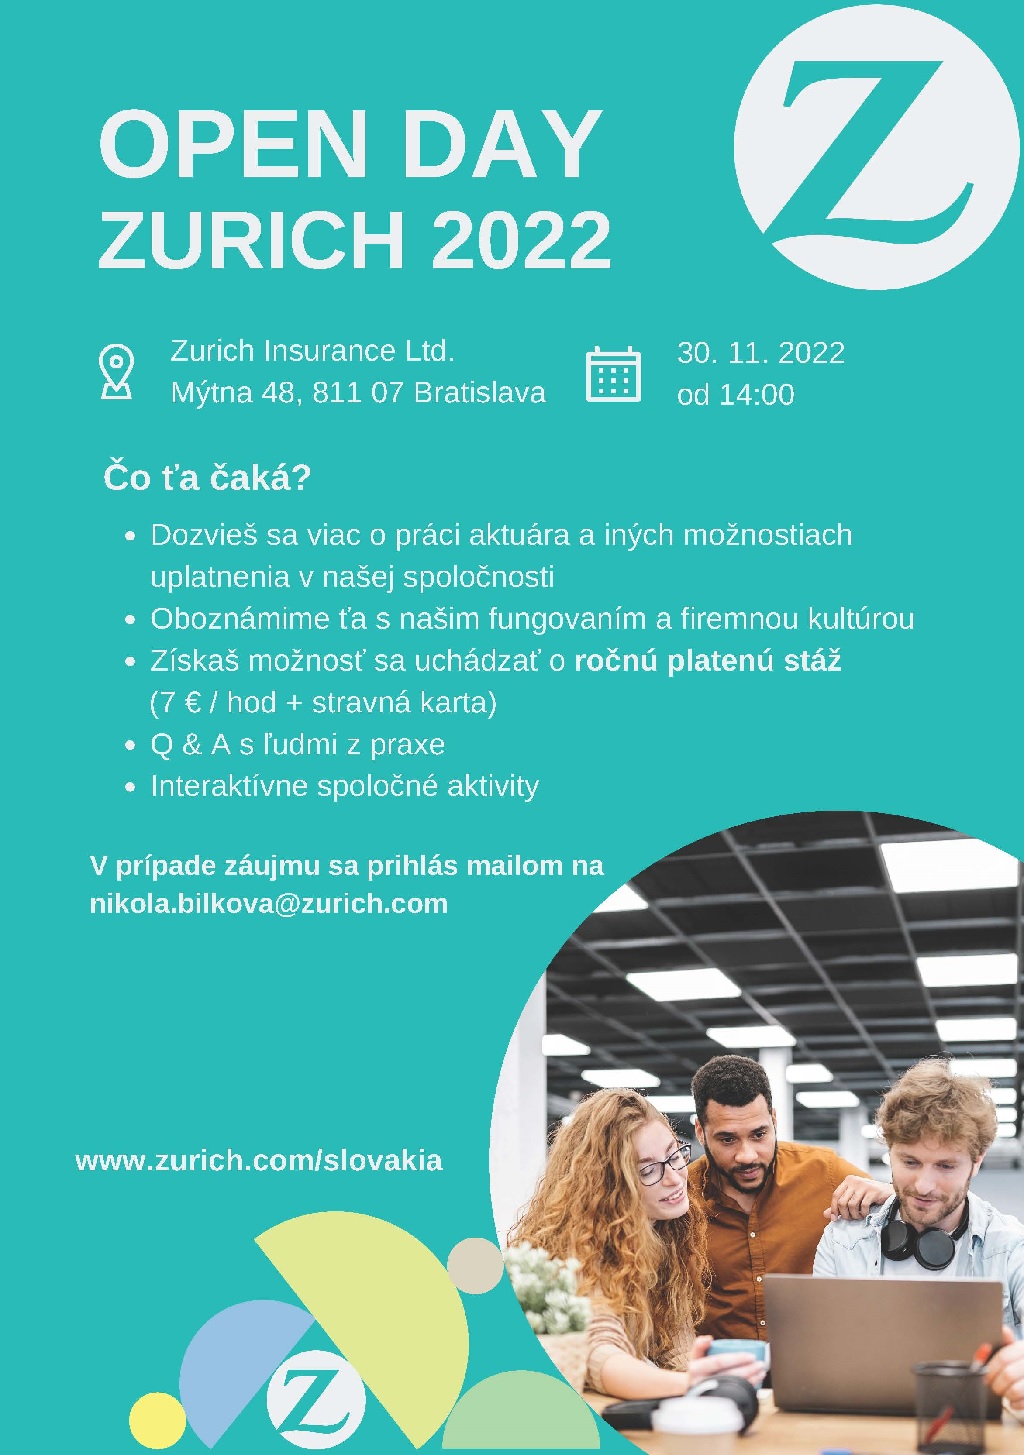 Zurich_Open_Day_2022_inv.jpg